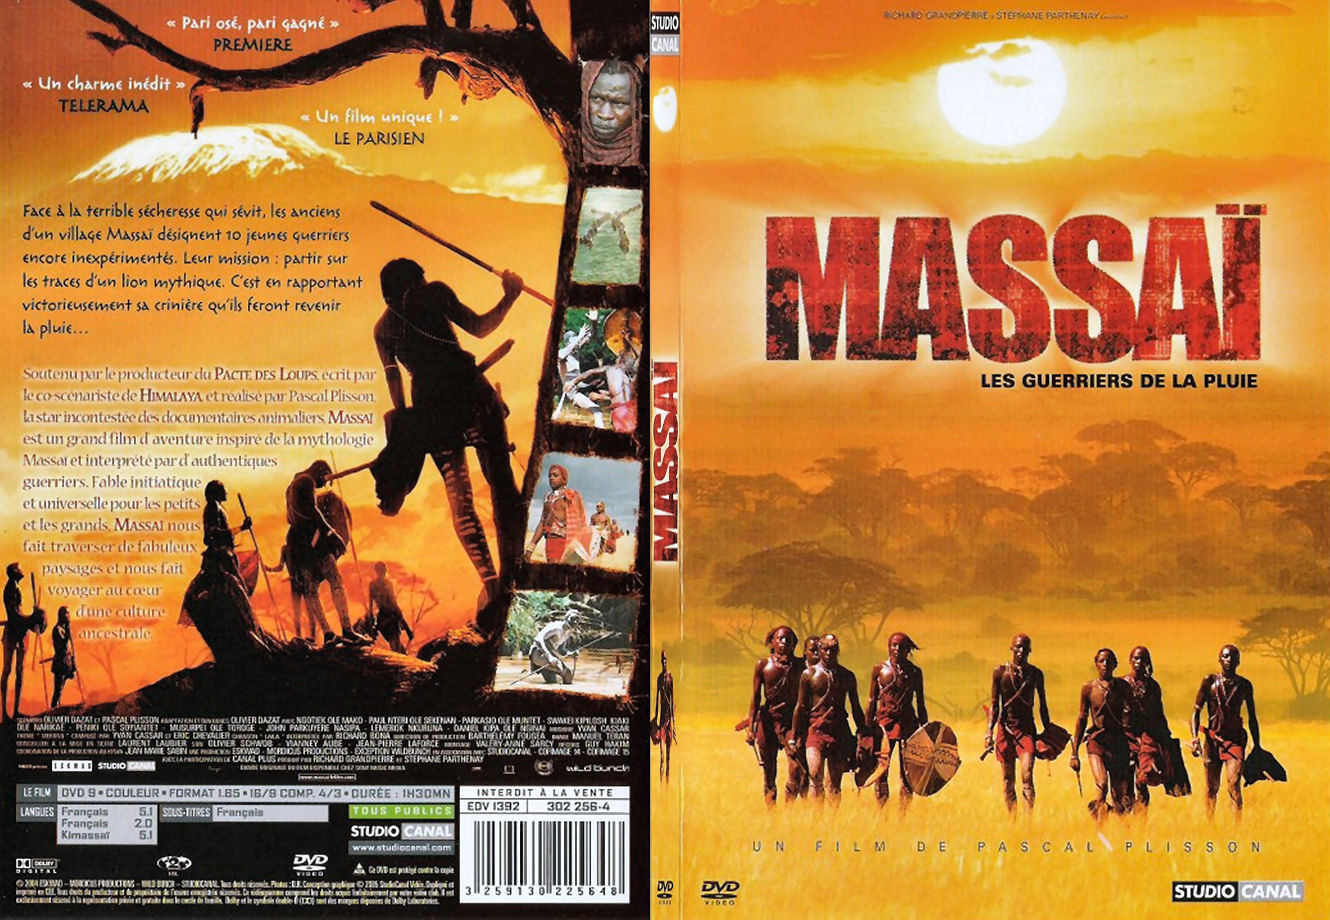 Jaquette DVD Massai les guerriers de la pluie - SLIM